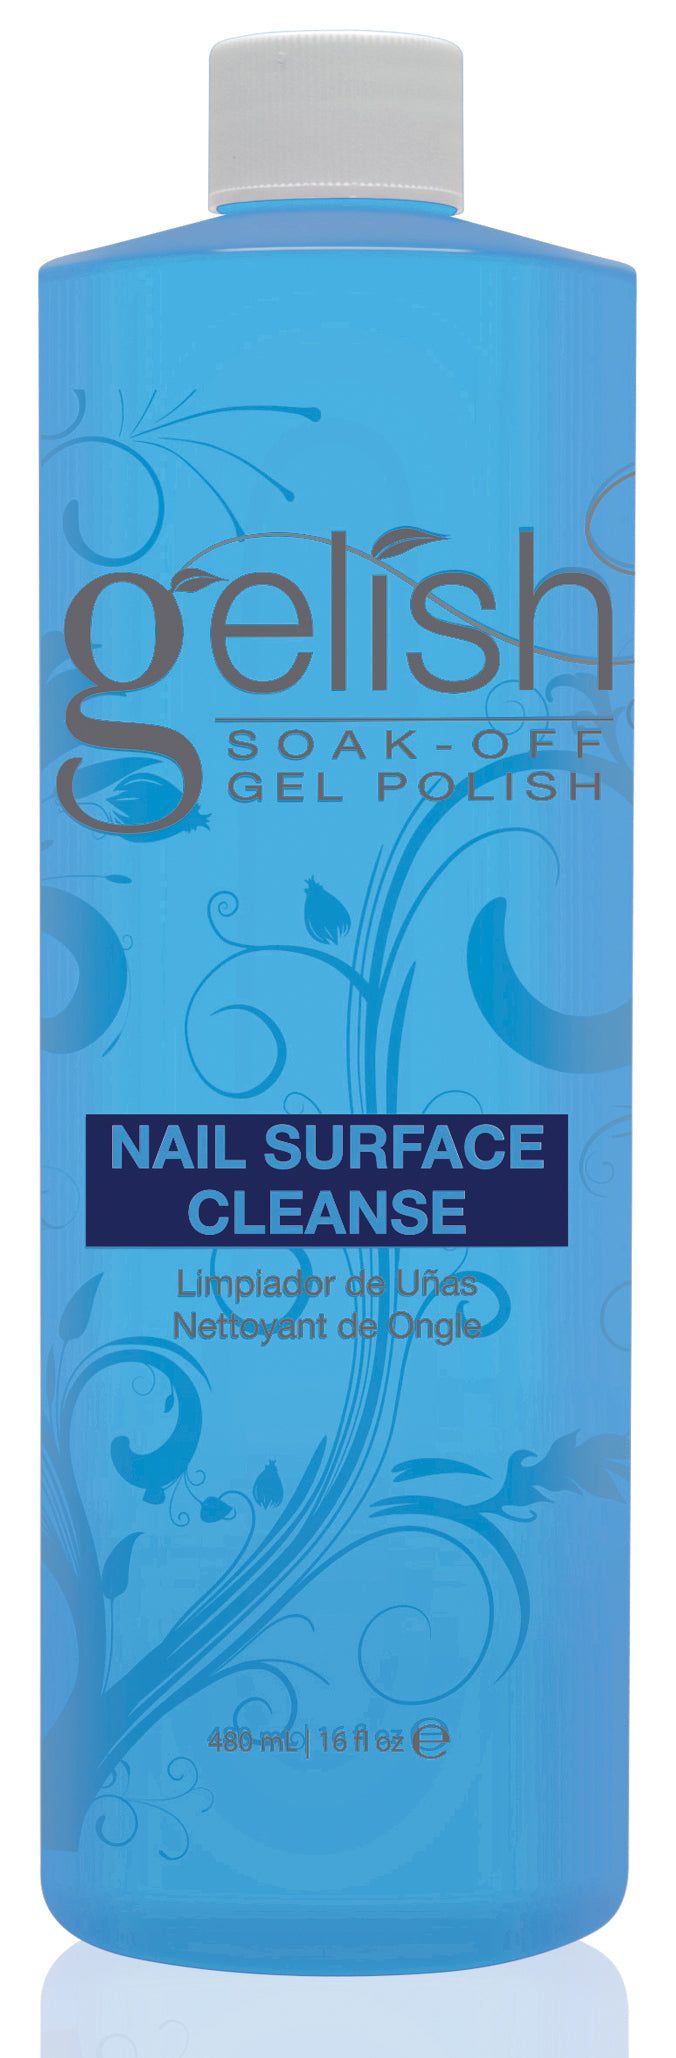 Gelish Nail Soak Off Surface Gel UV Top Coat Cleanser Bottle 16fl oz (4 Pack)